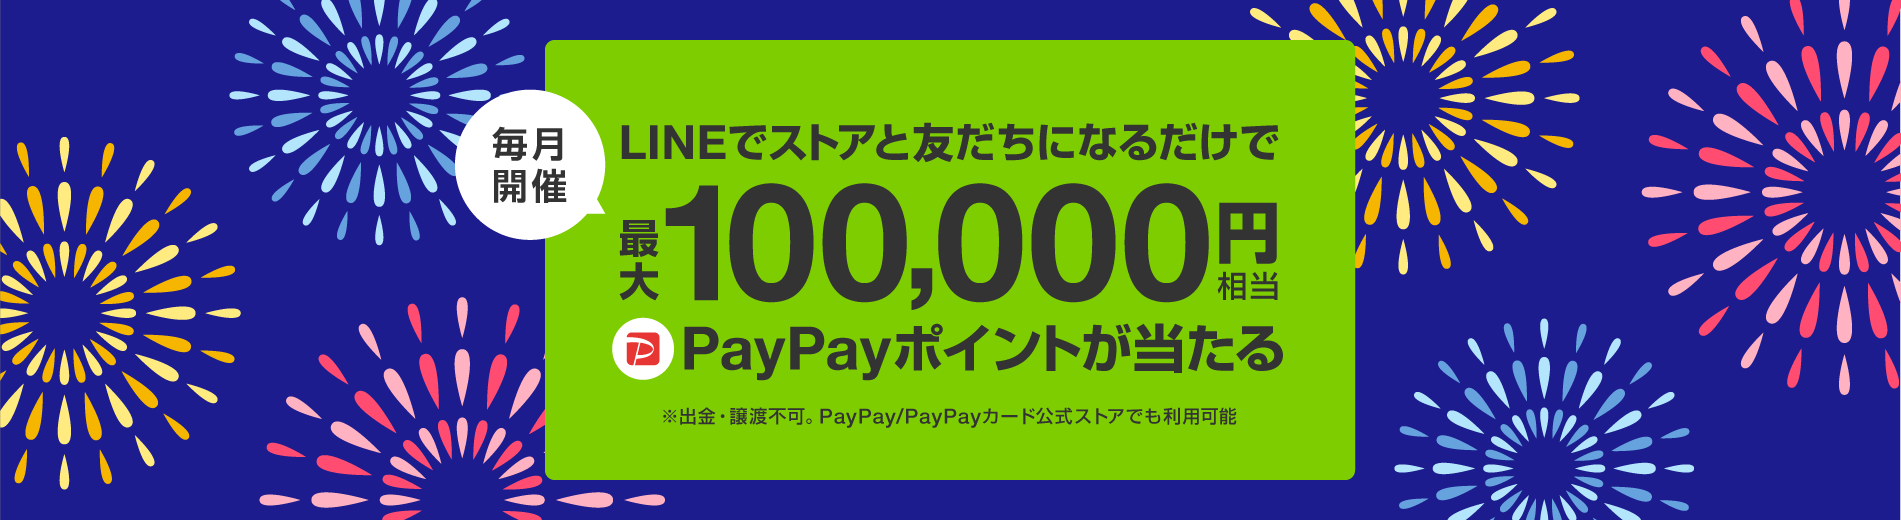 毎月開催_LINEでストアと友だちになるだけで_最大100,000円相当_PayPayポイントが当たる